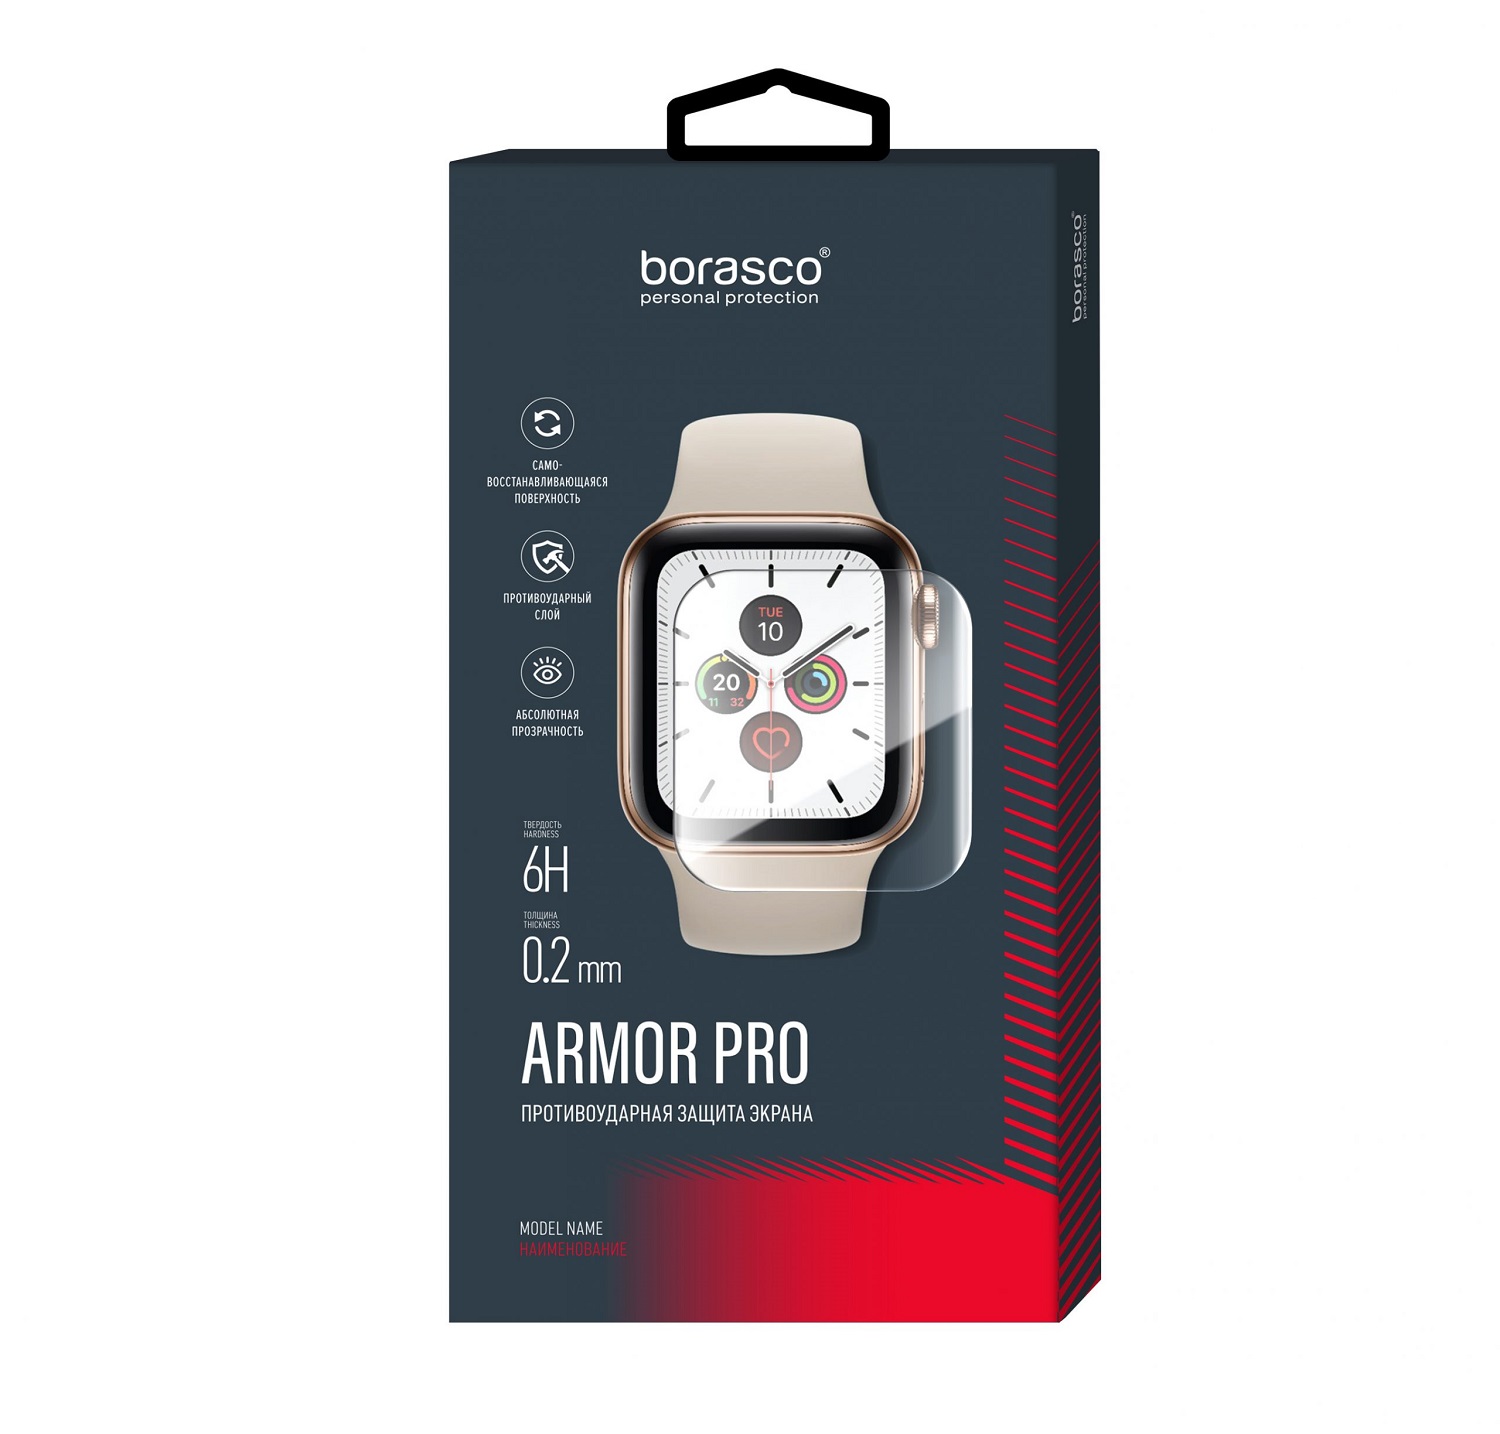 Защита экрана BoraSCO Armor Pro для Huawei Watch fit защита экрана borasco armor pro для philips w200 глянец